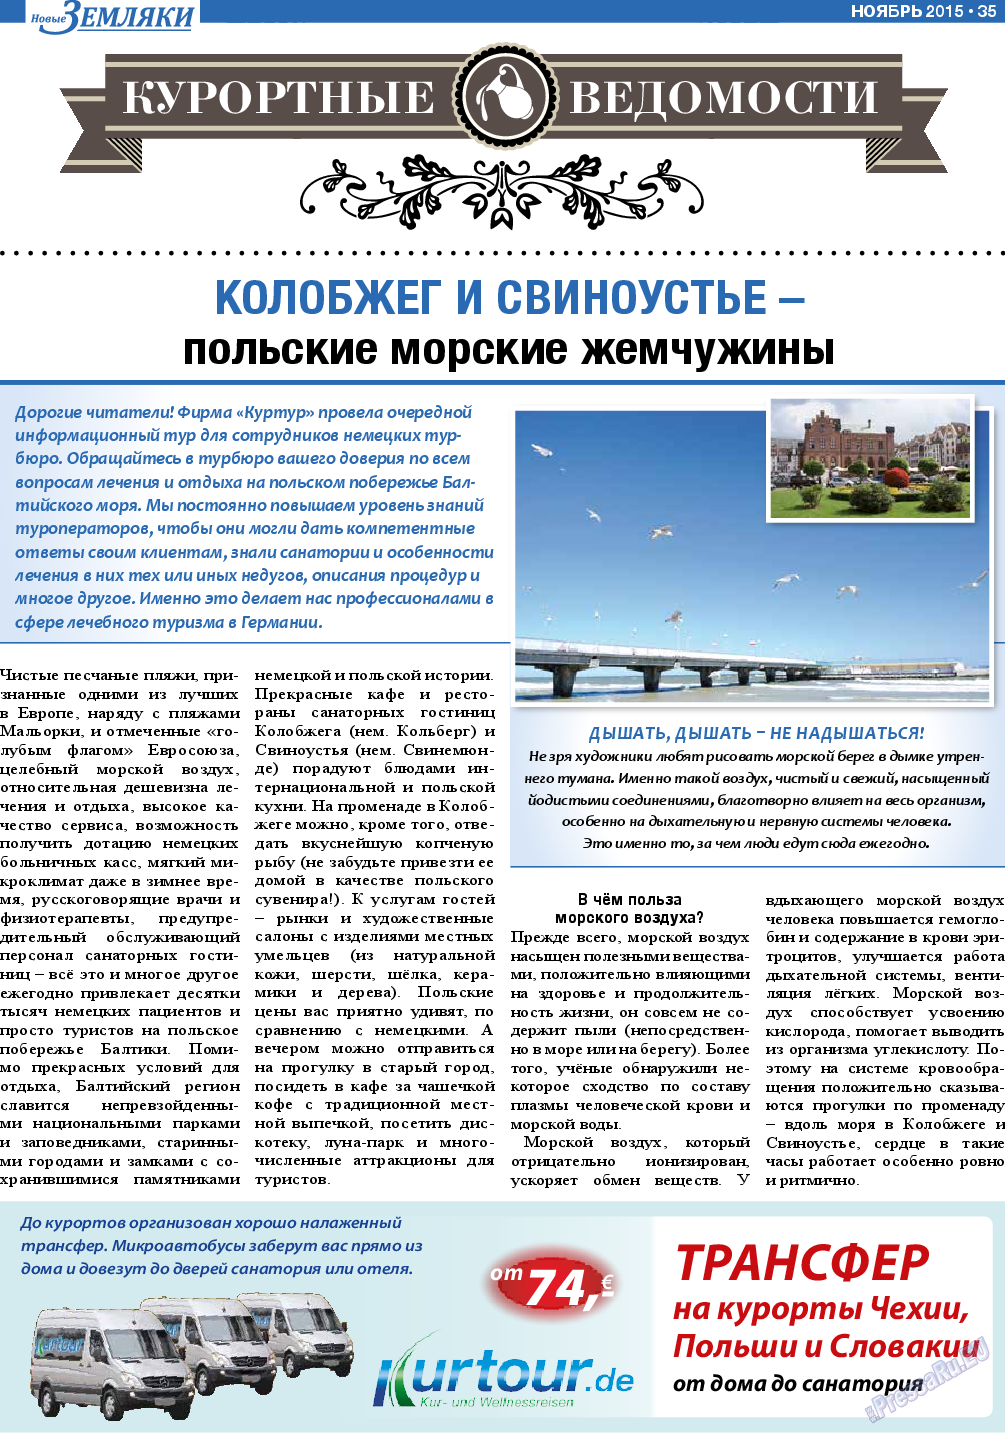 Новые Земляки (газета). 2015 год, номер 11, стр. 35